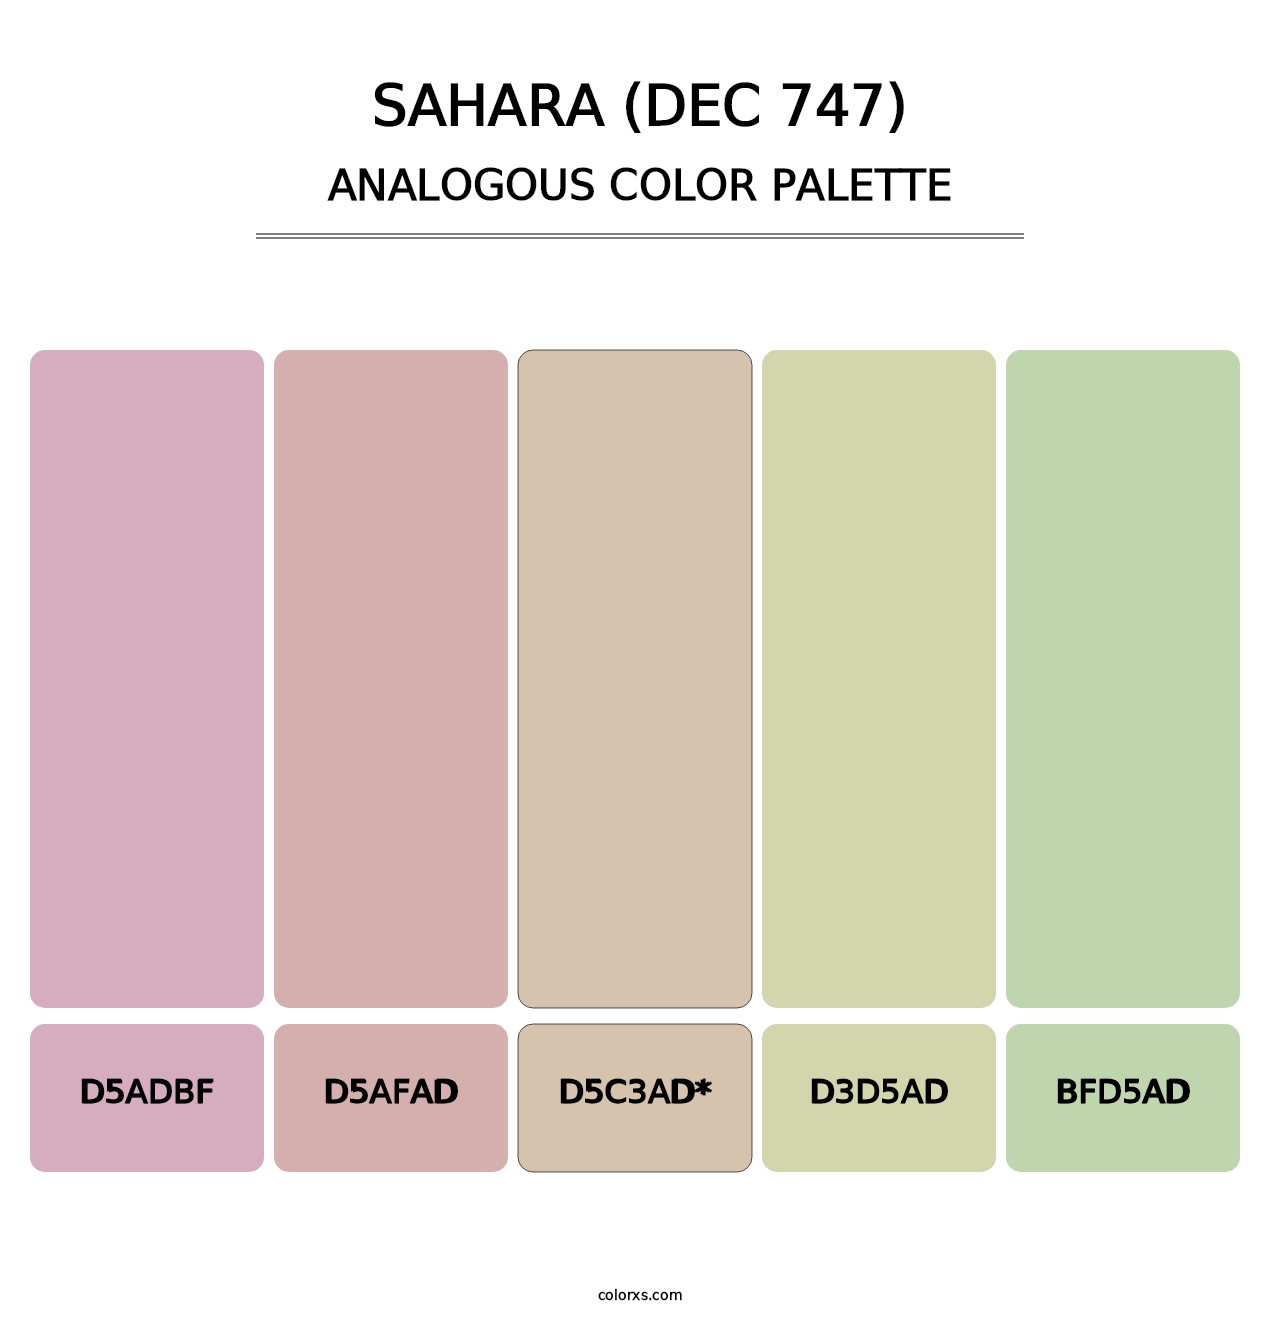 Sahara (DEC 747) - Analogous Color Palette